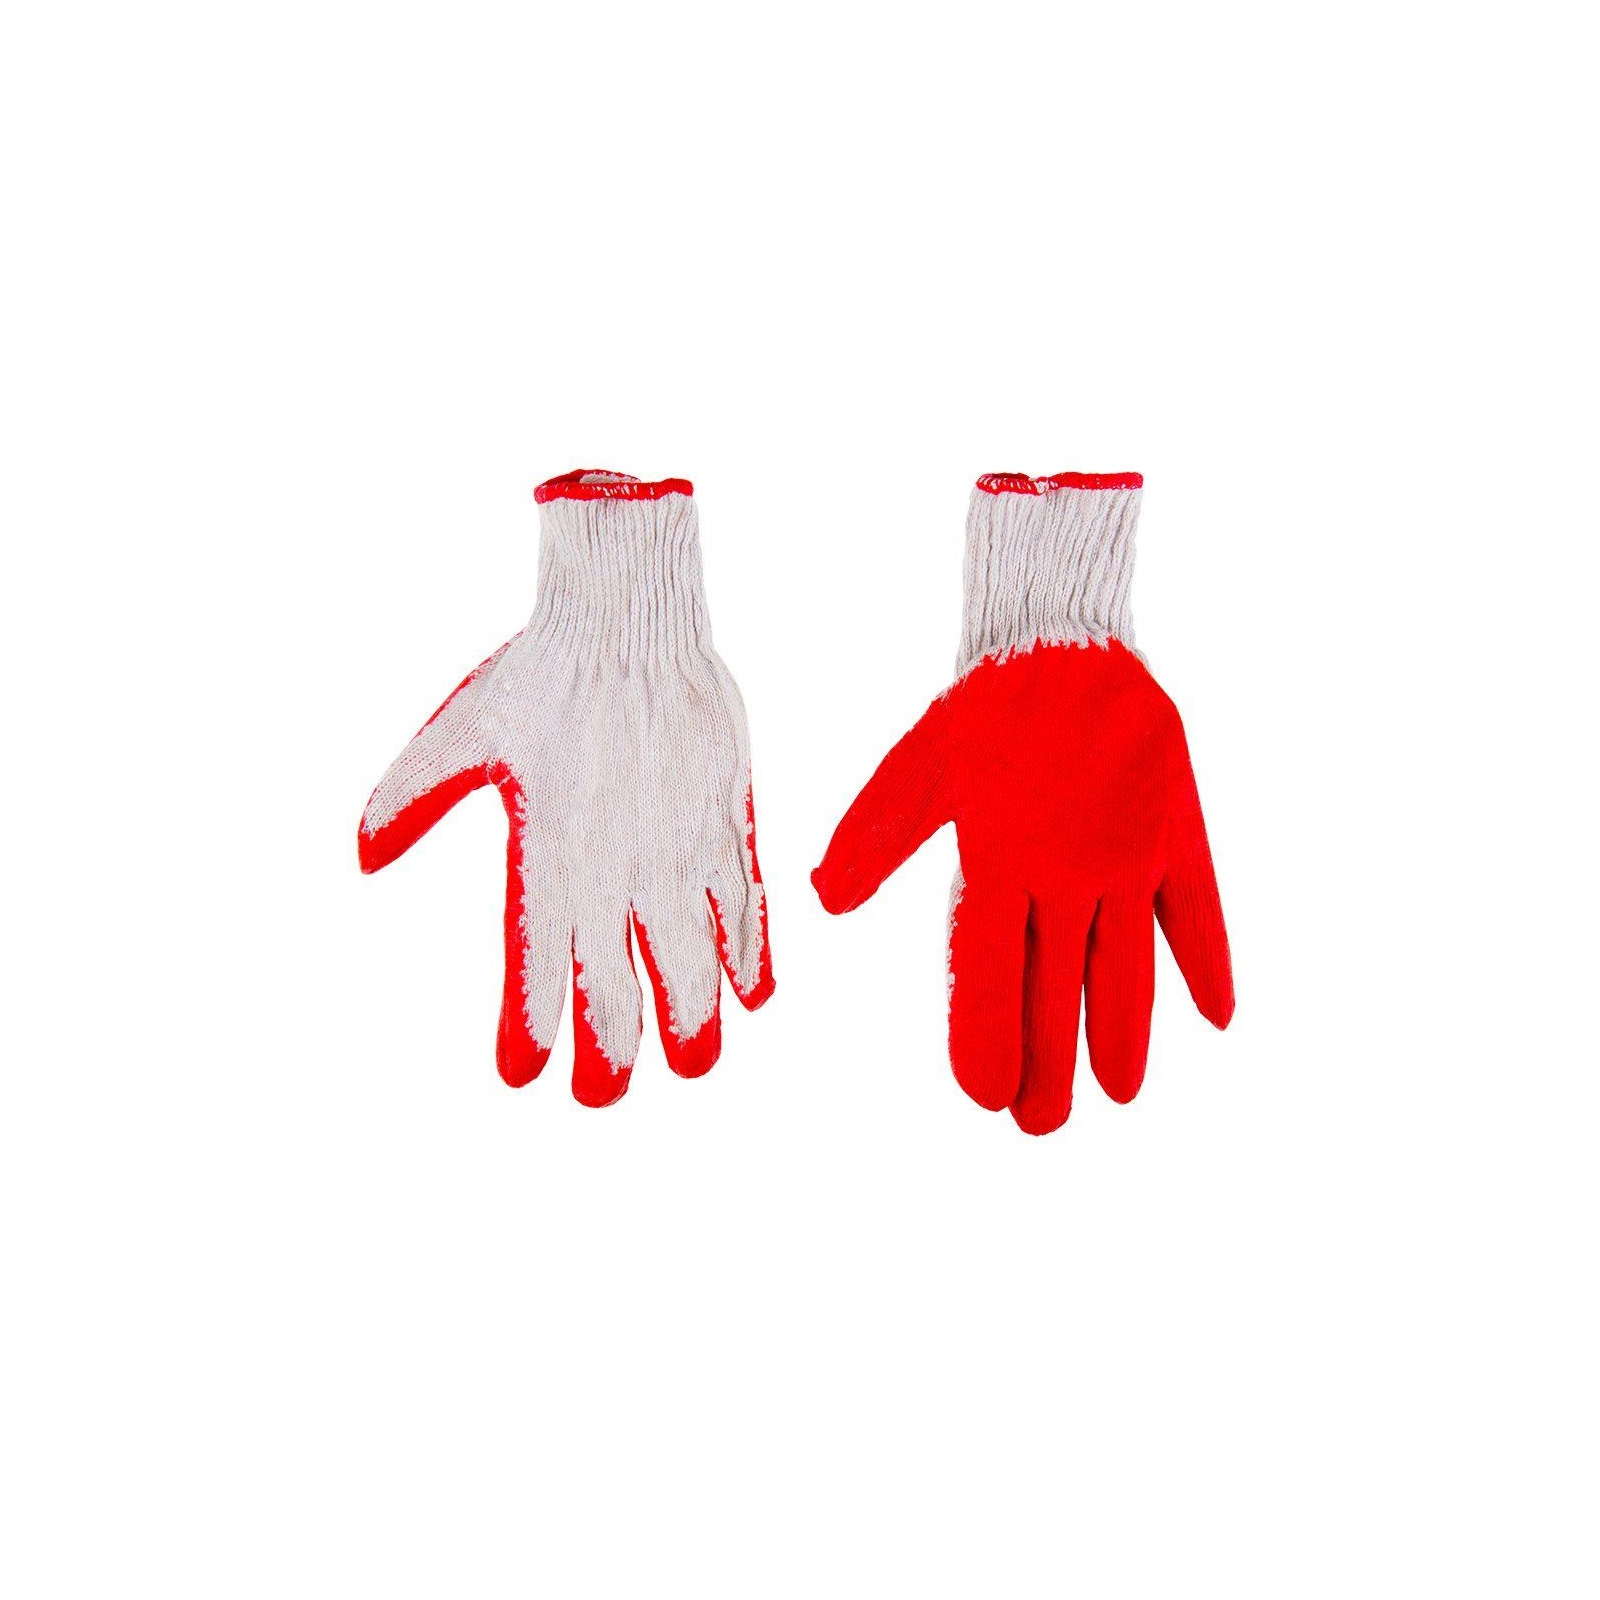 Защитные перчатки Top Tools хлопок, резиновое покрытие, красные, р.9 (83S203)